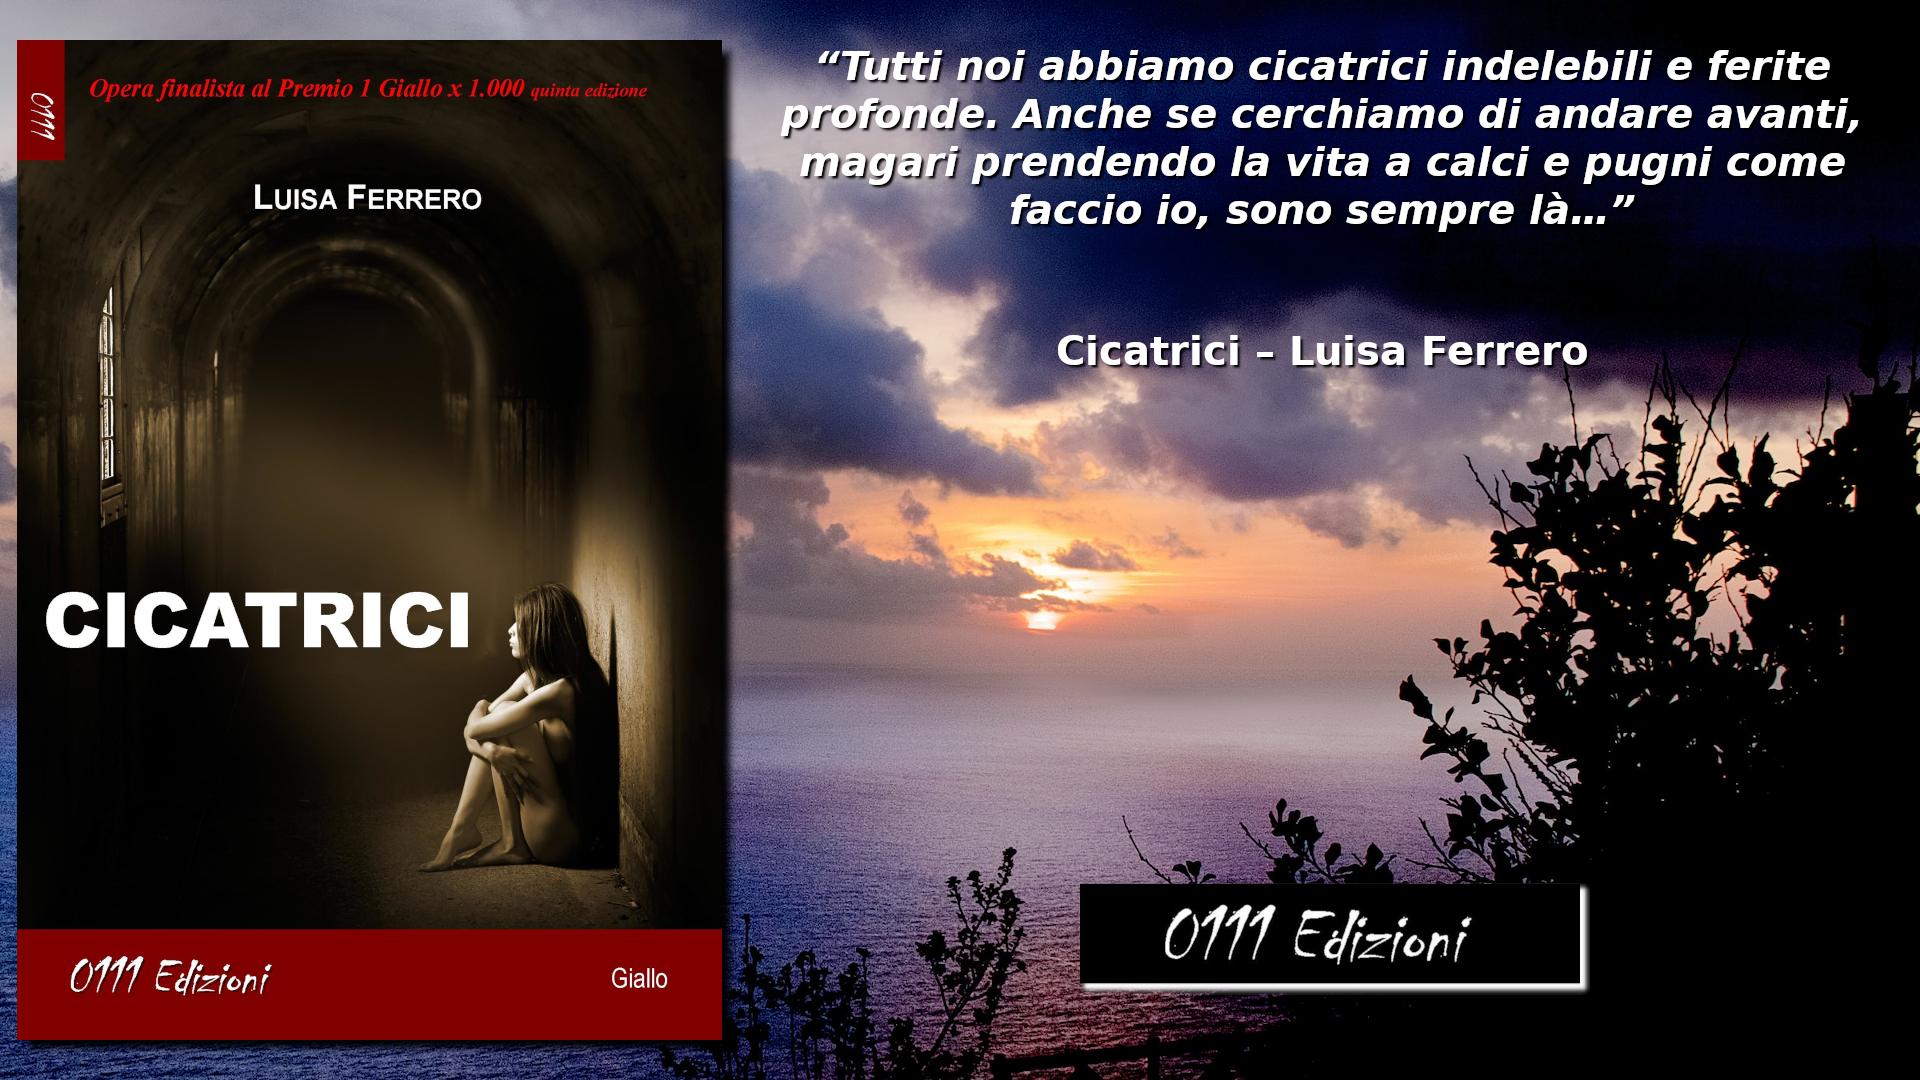 Copertina libro Luisa Ferrero Cicatrici di Luisa Ferrero e una frase del libro